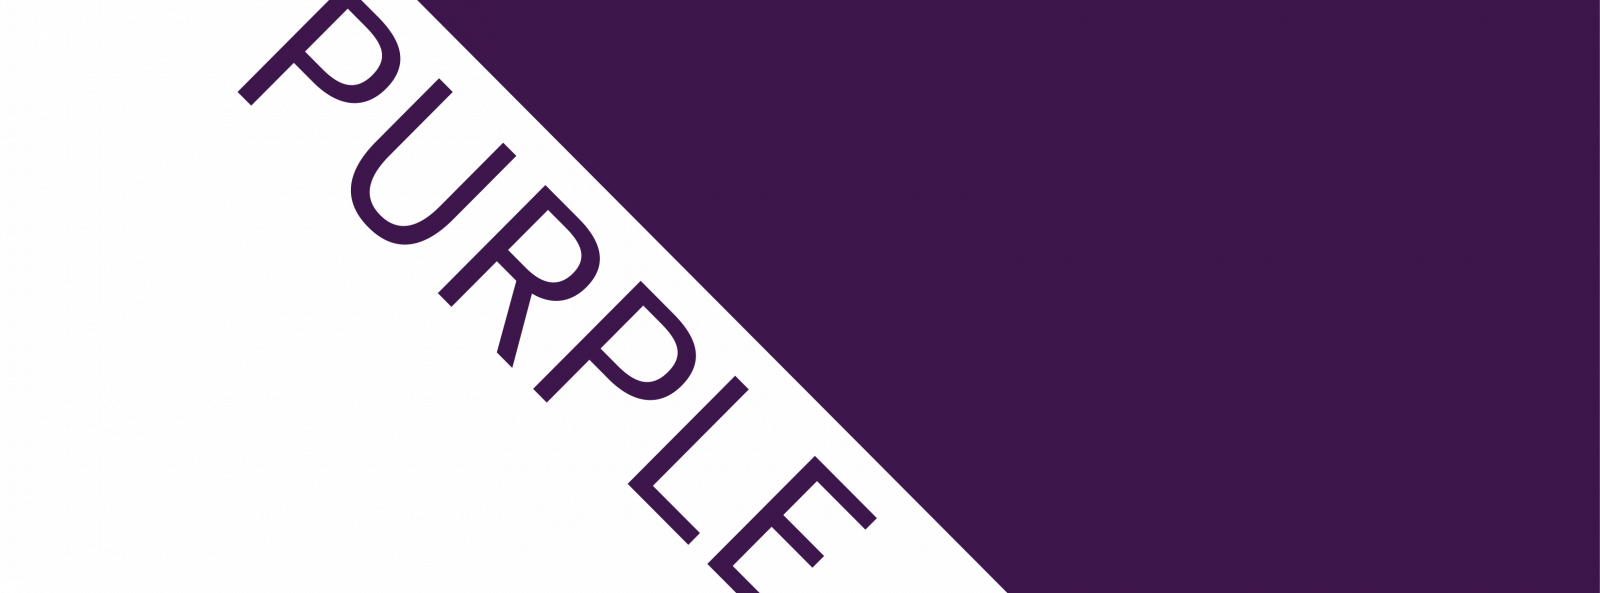 PurpleCorner